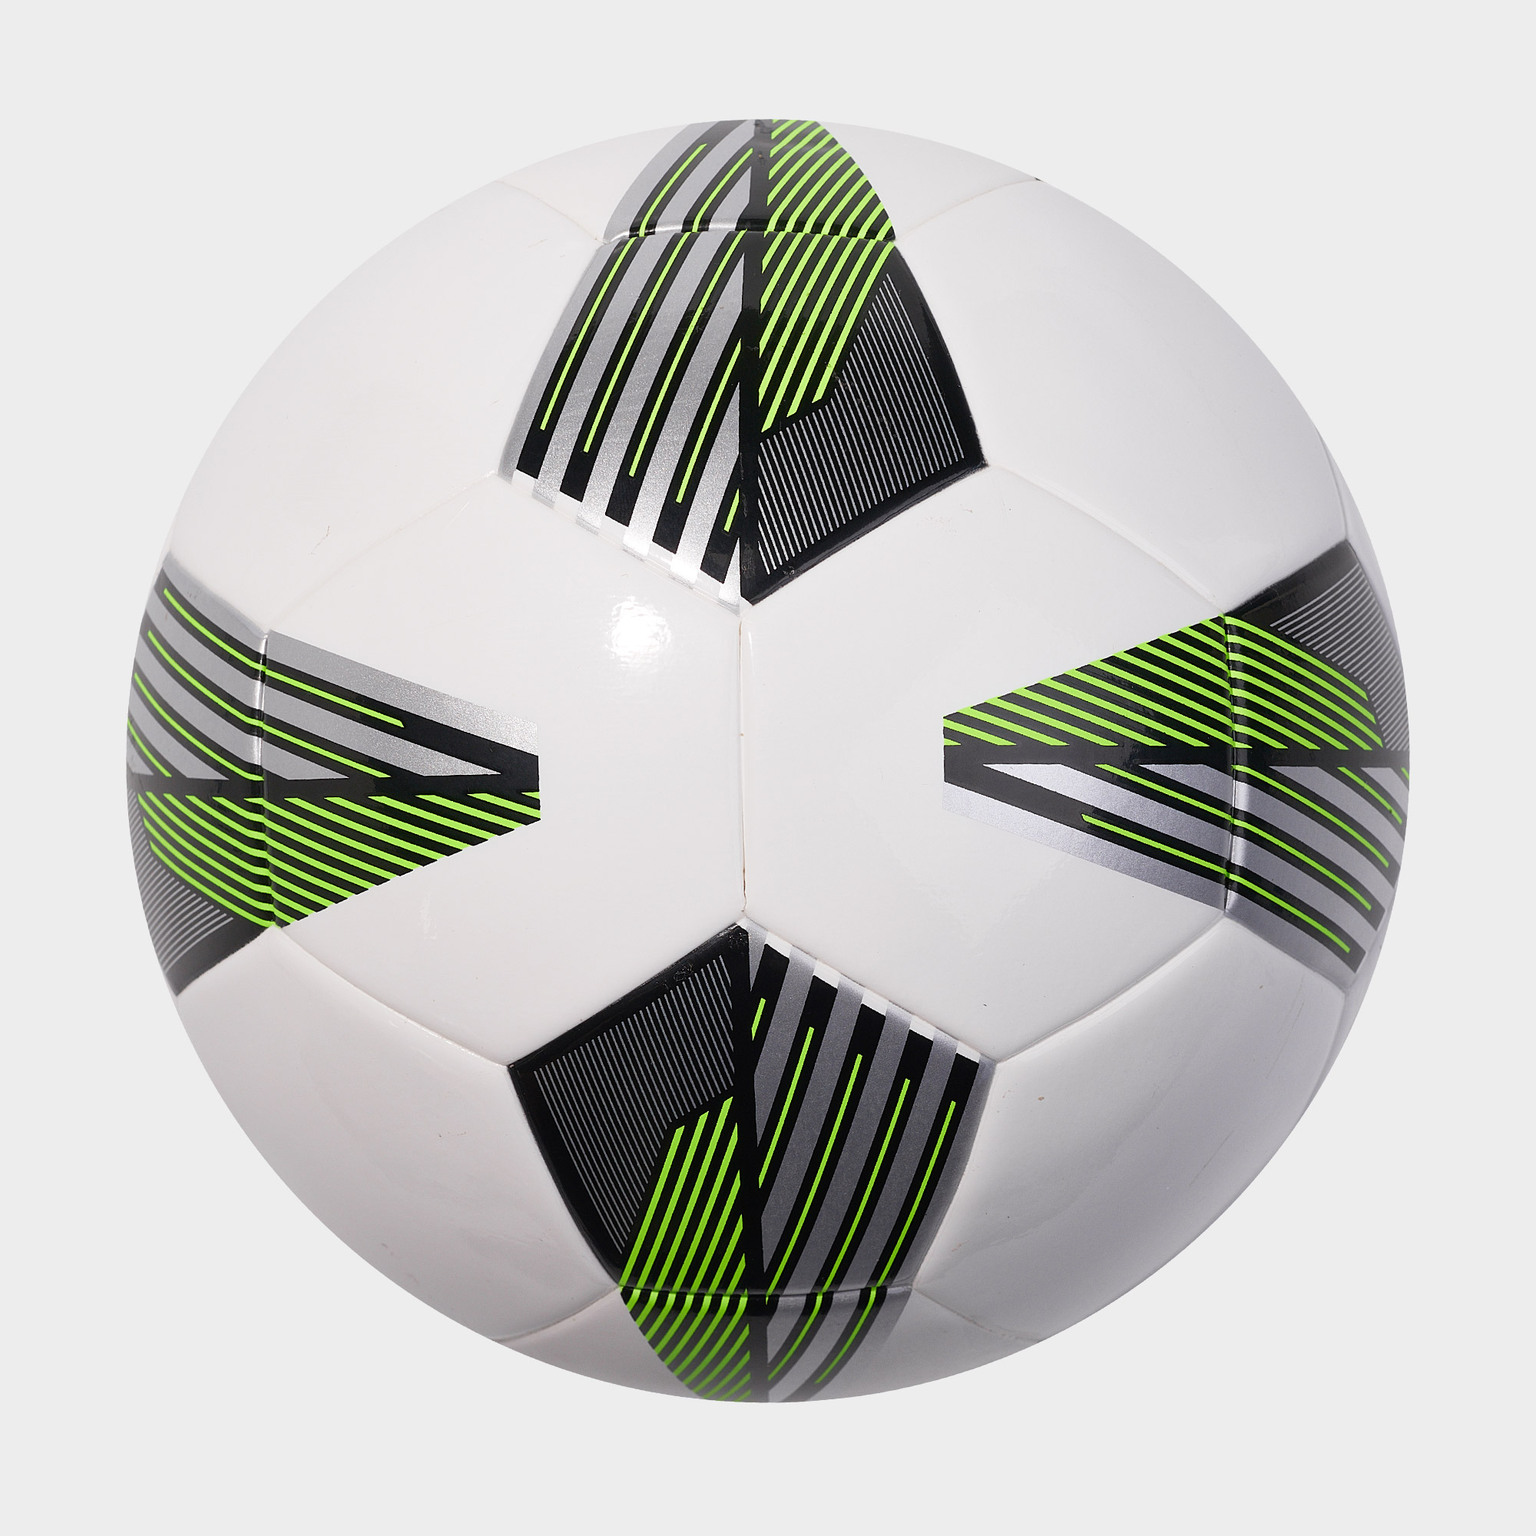 Футбольный мяч Adidas Tiro League J290 FS0371